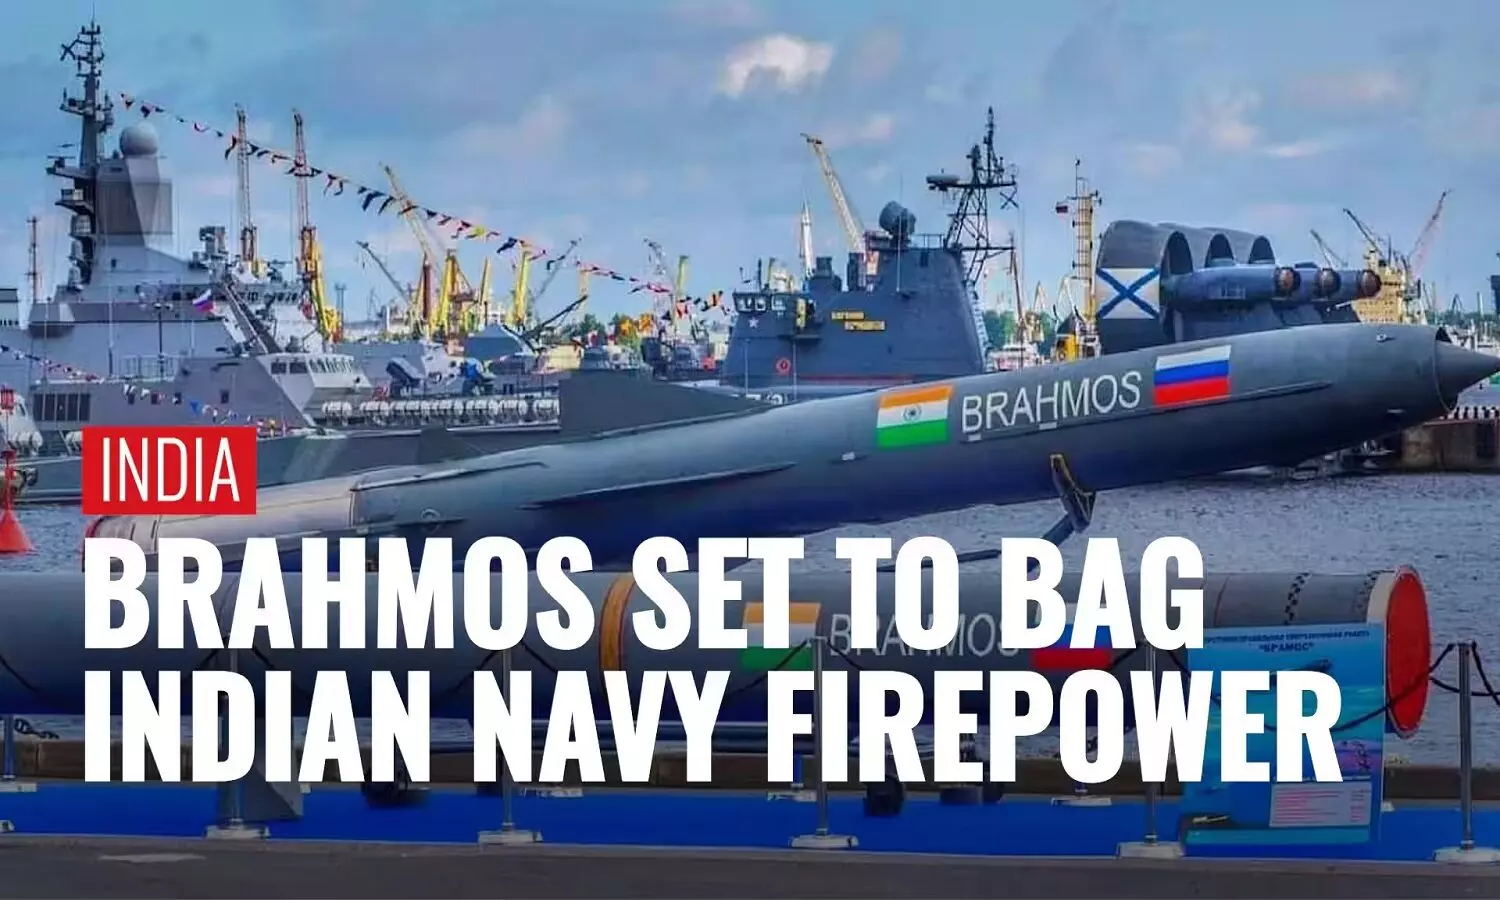 भारतीय नौसेना ब्रह्मोस एयरोस्पेस के साथ करेगी 20 लाख करोड़ रुपए की डील!